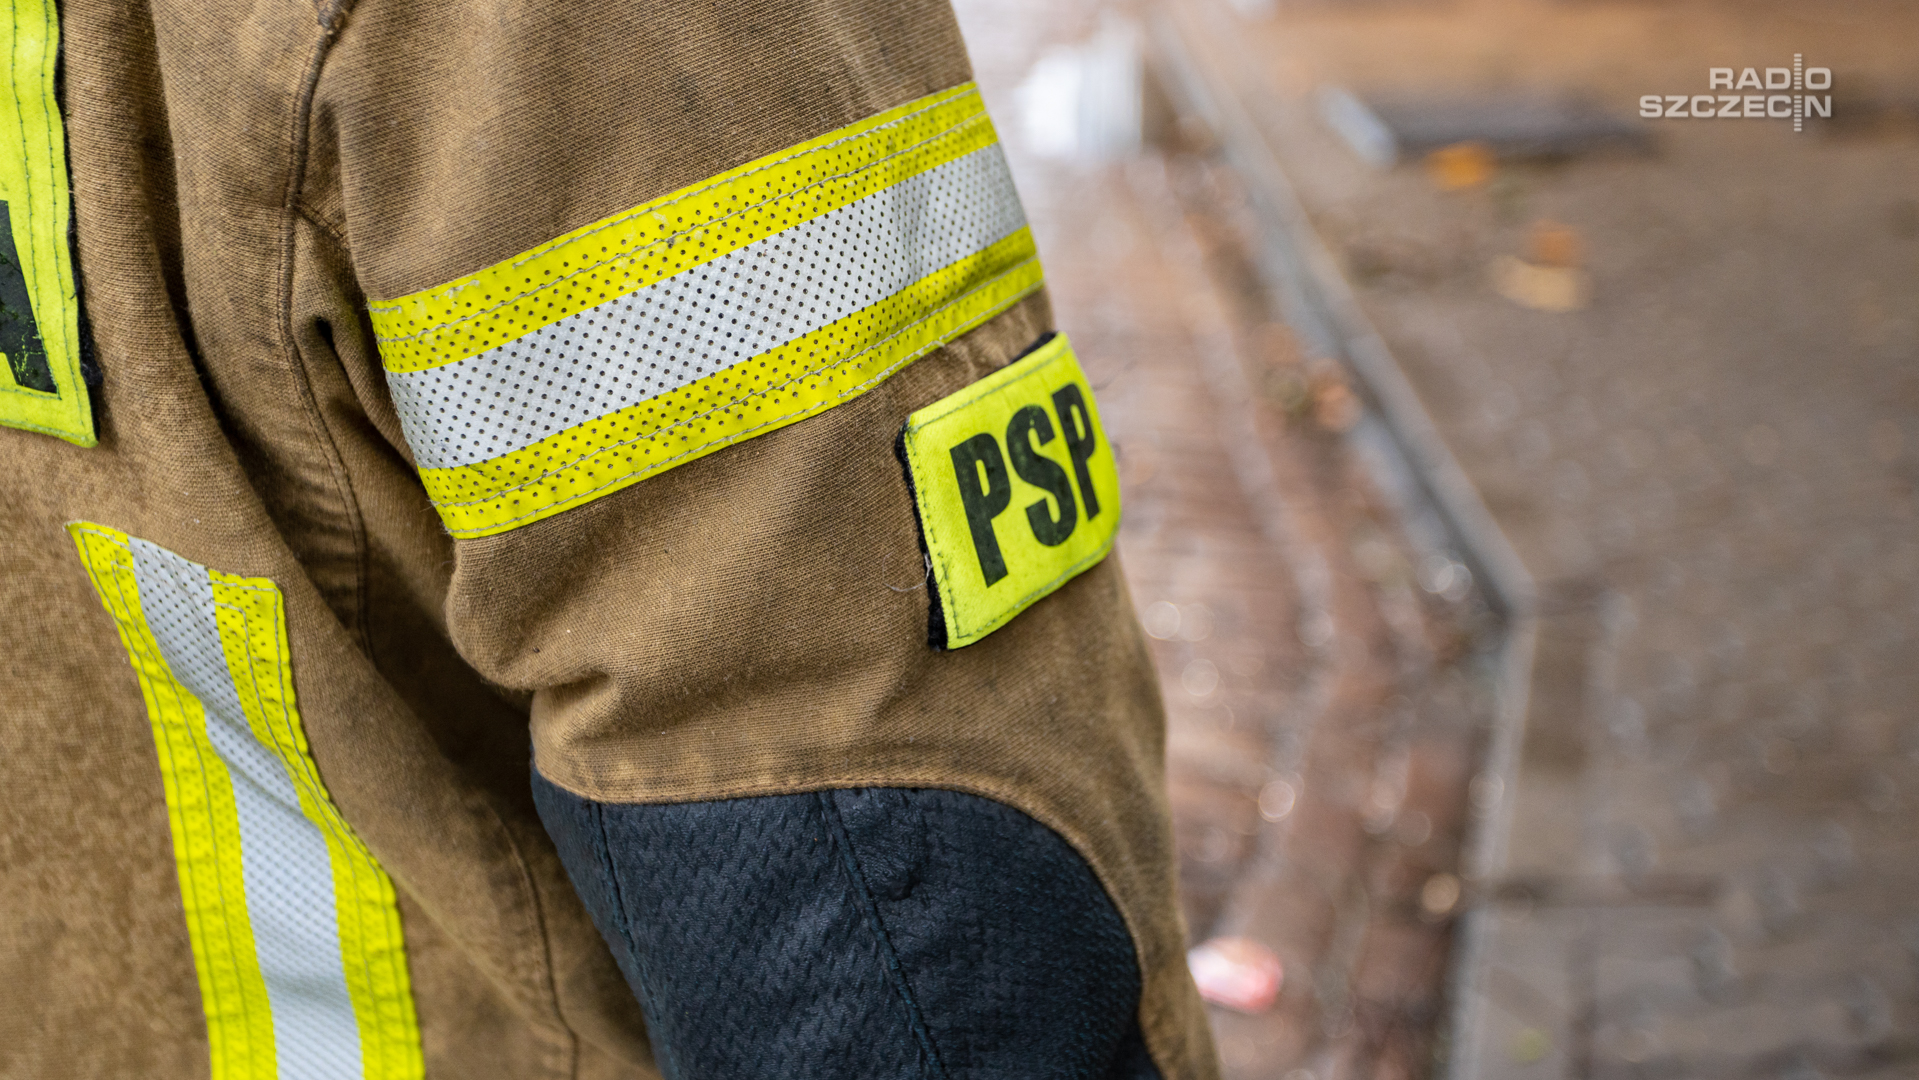 Rzecznik Państwowej Straży Pożarnej Karol Kierzkowski zapewnił, że strażacy aktywnie uczestniczą w działaniach mających na celu ograniczenie skażenia Odry.